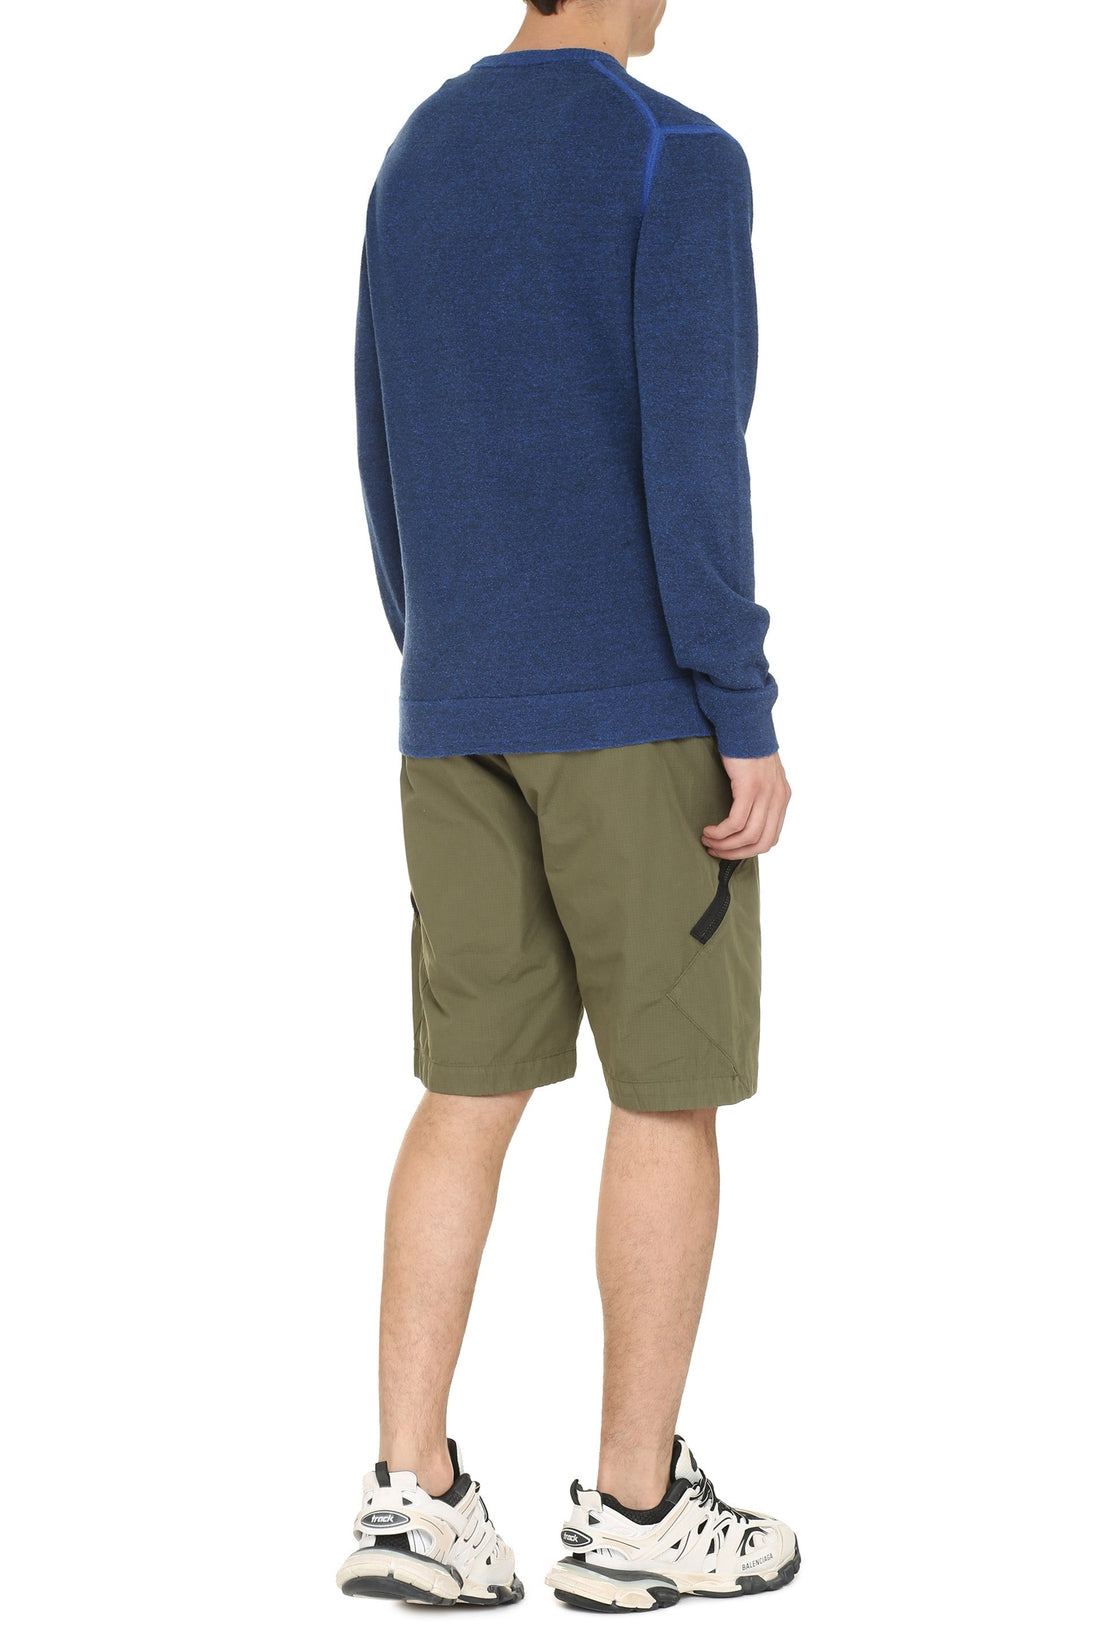 C.P. Company-OUTLET-SALE-Linen blend crew-neck sweater-ARCHIVIST